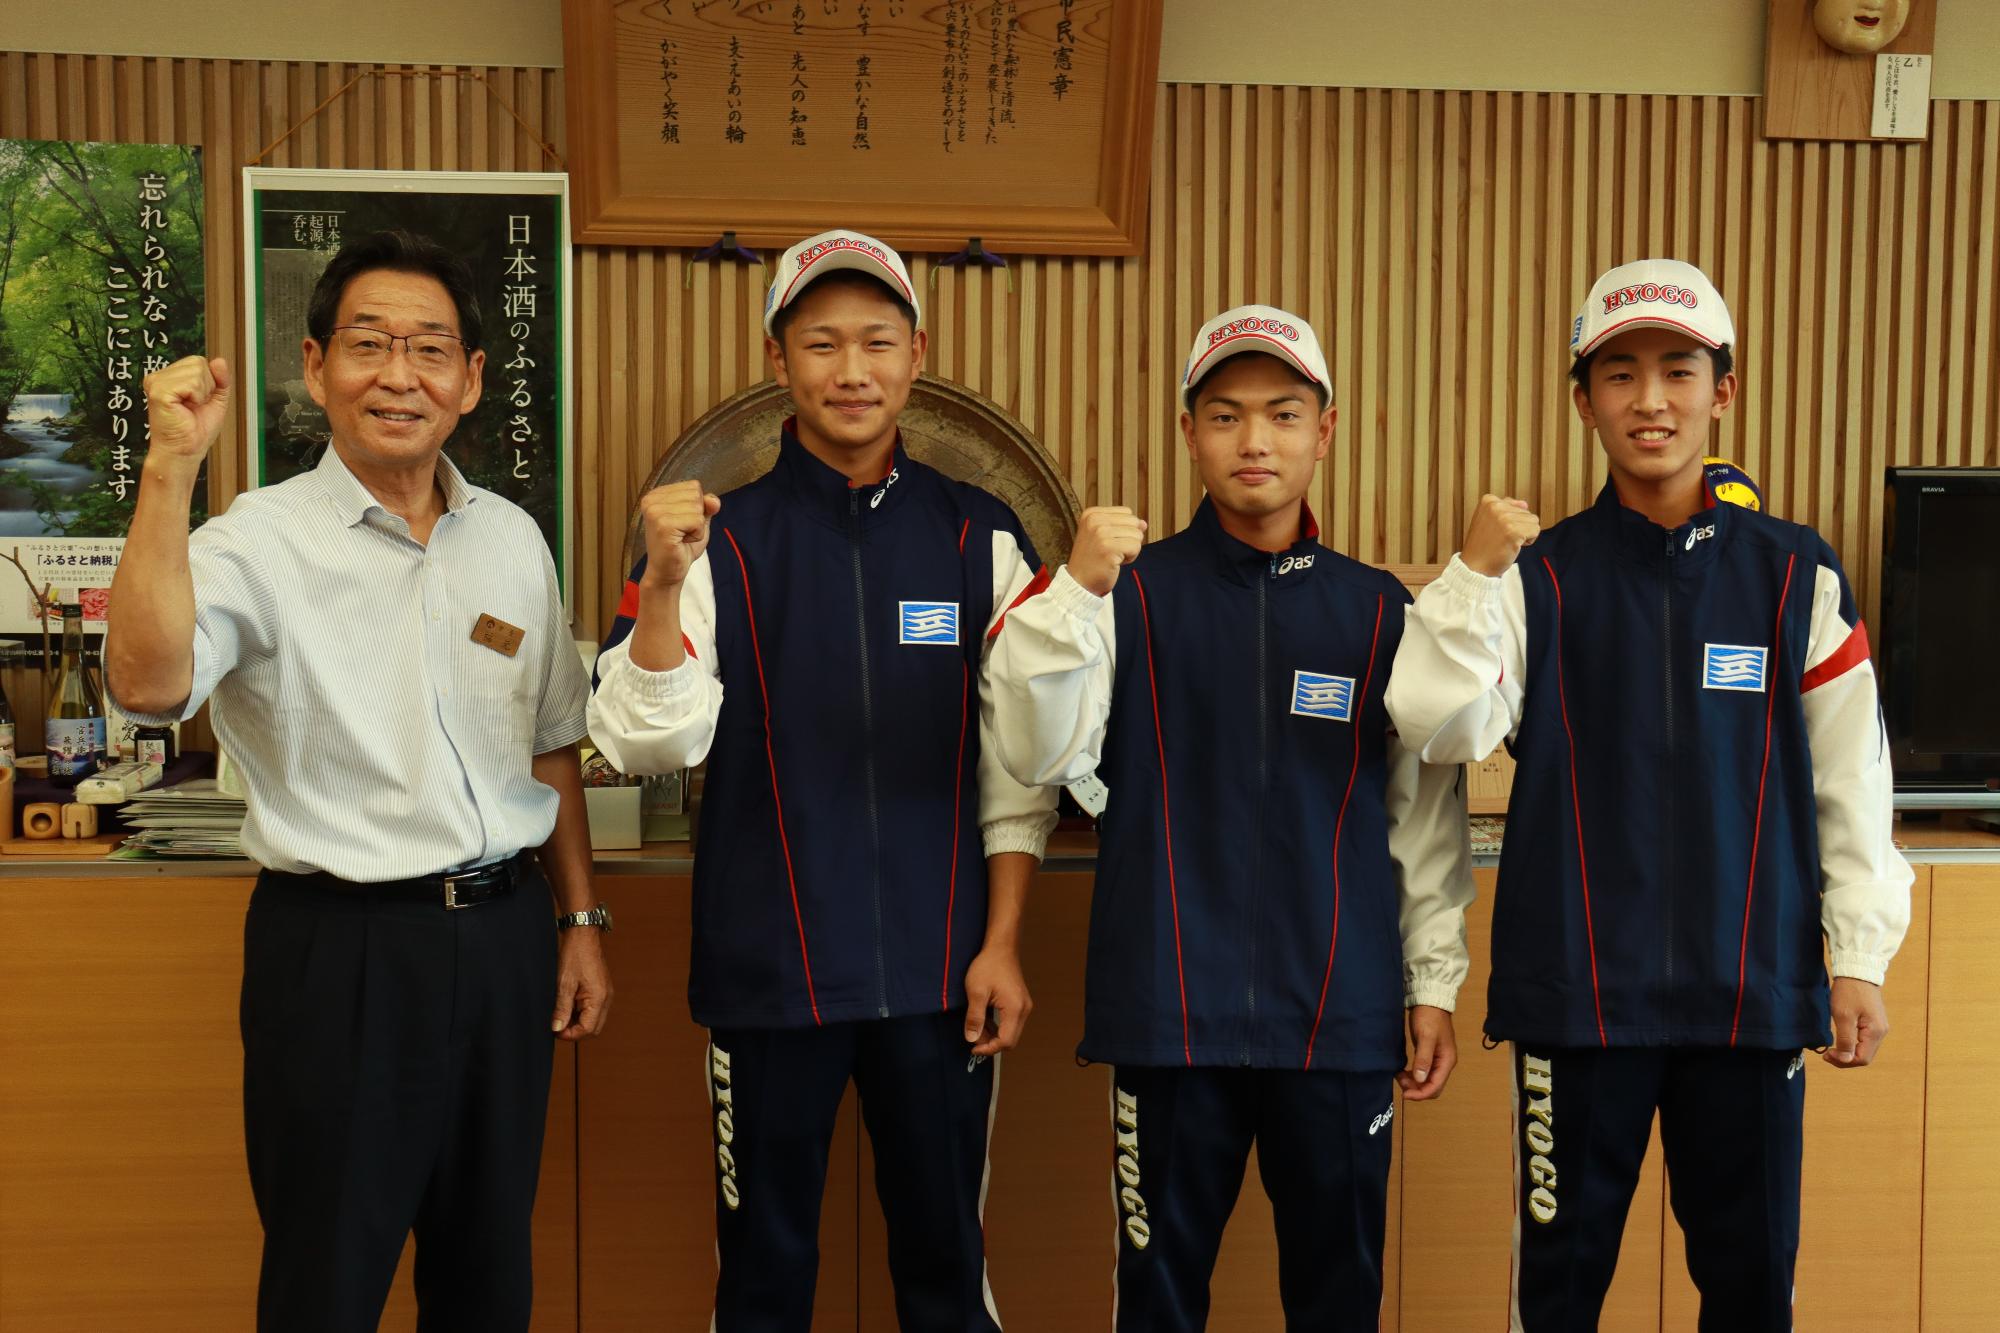 左から福元市長、国体ソフトボールに出場する山崎高校の藤原さん、小林さん、岸本さんの写真